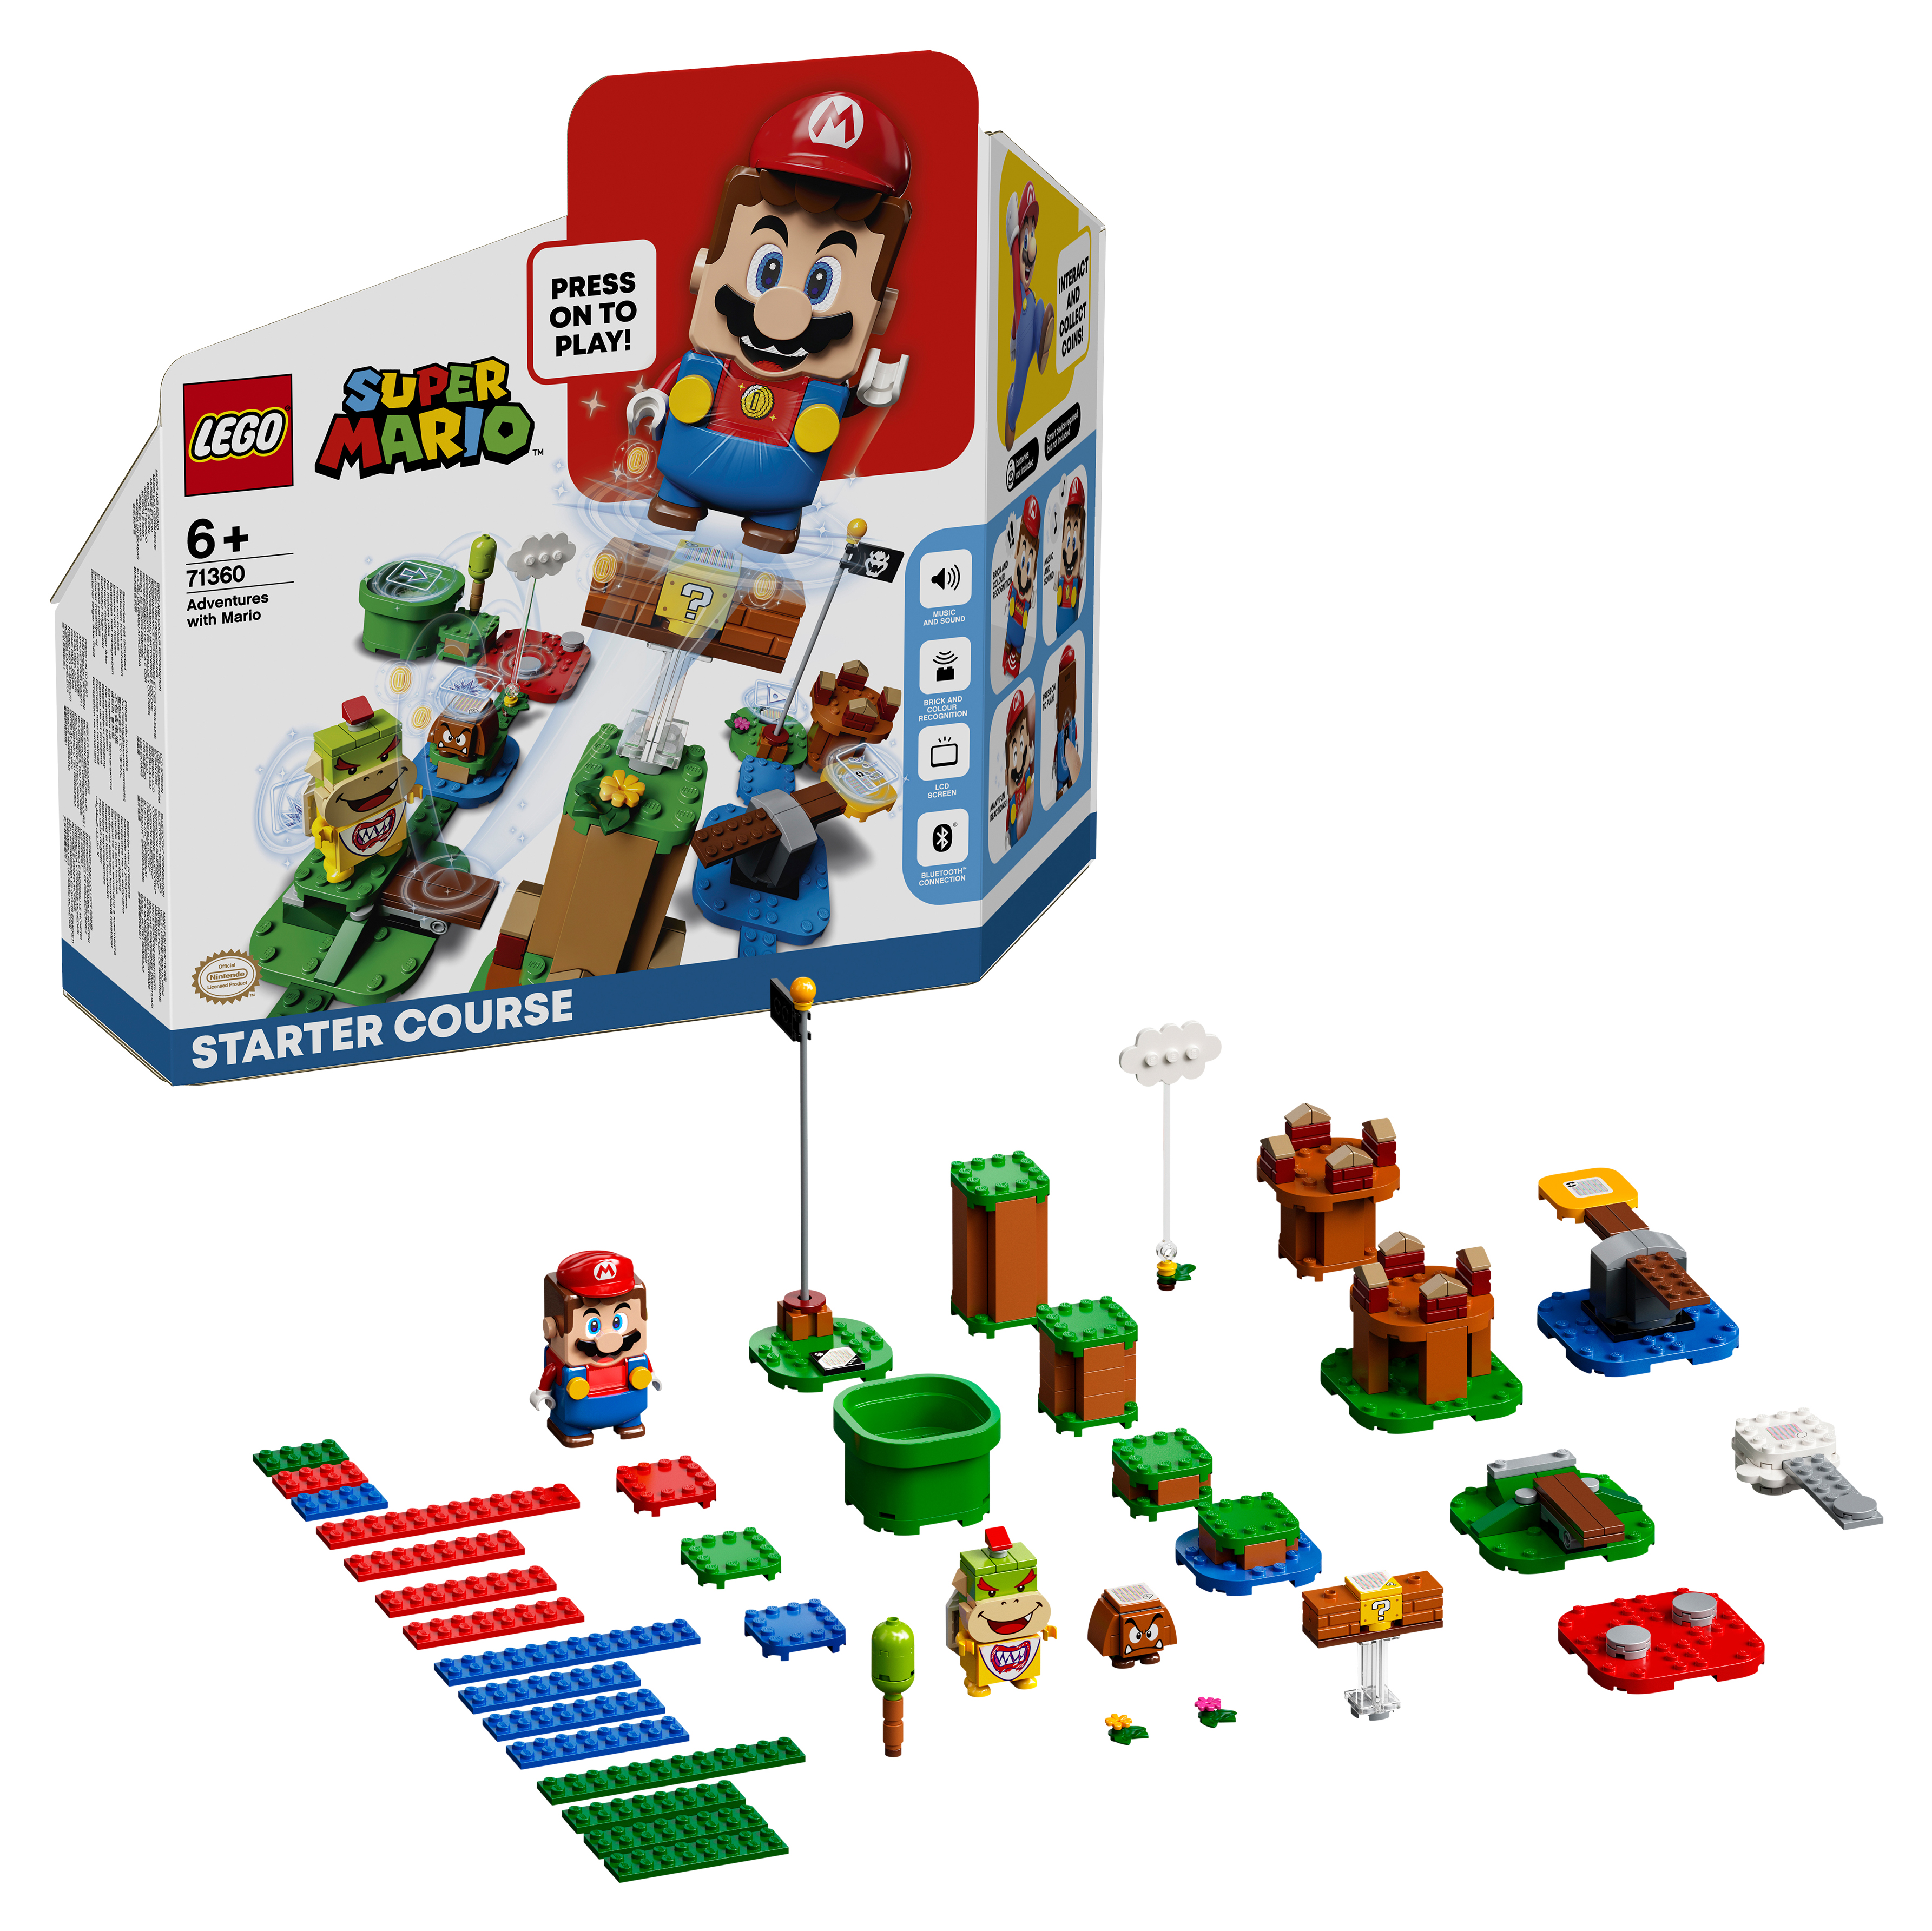 Конструктор LEGO Super Mario Приключения вместе с Марио Стартовый набор, 231 деталь, 71360 конструктор lego super mario nintendo entertainment system 71374